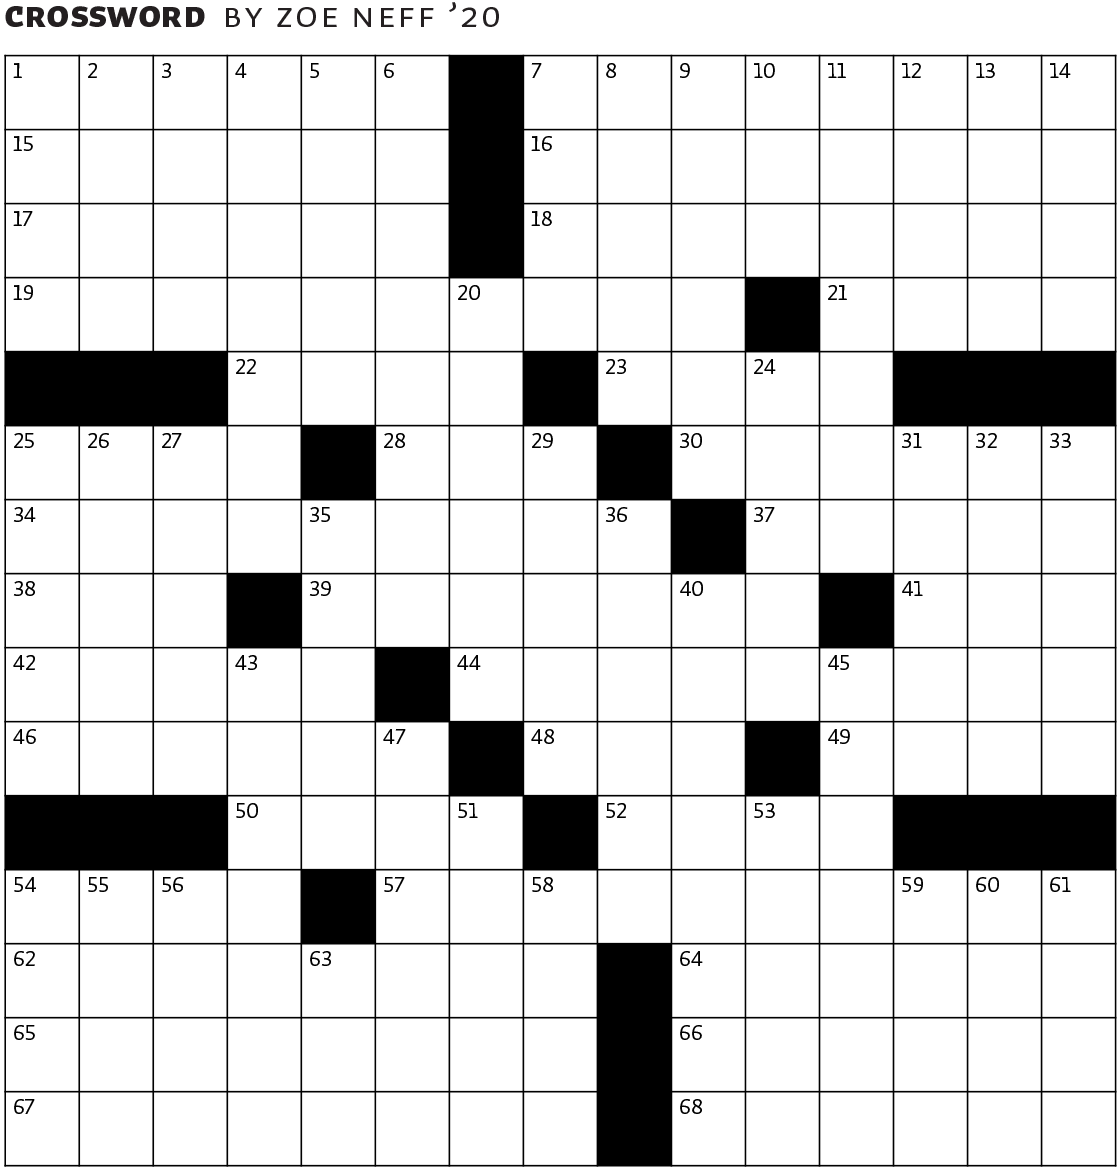 June 2018 crossword puzzle